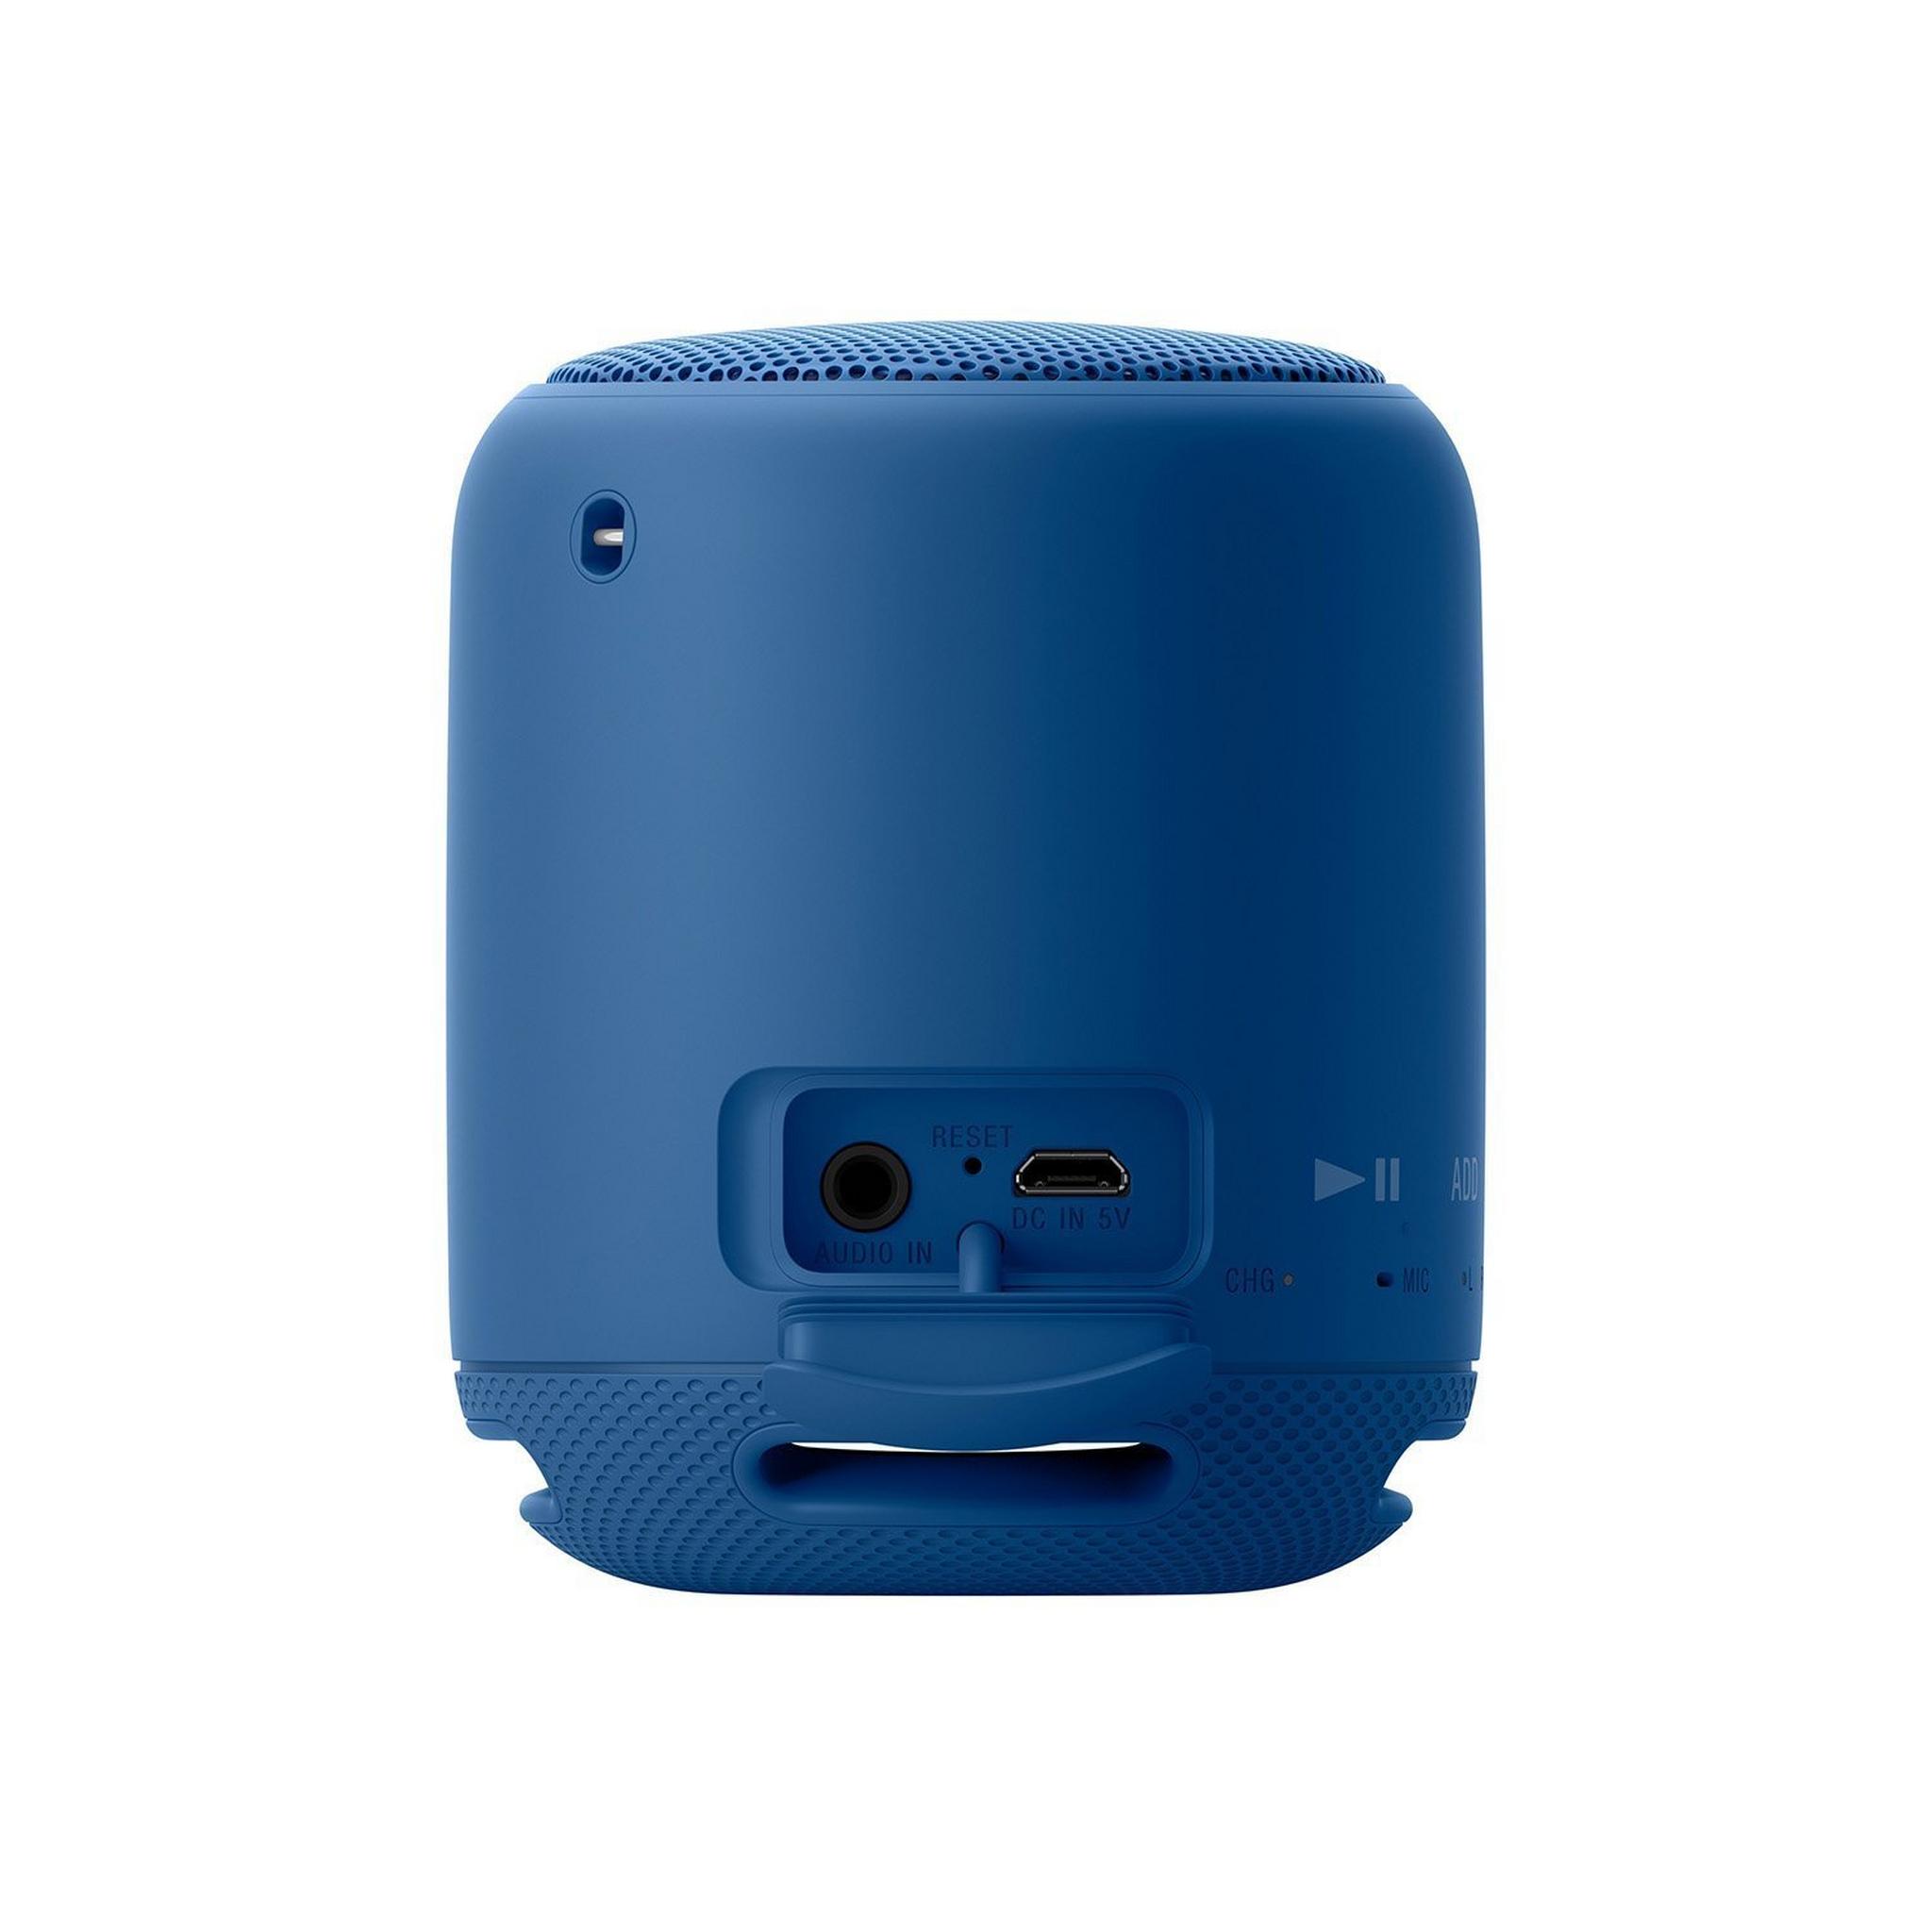 Sony Bluetooth Wireless Portable Speaker (SRS-XB10) - Blue